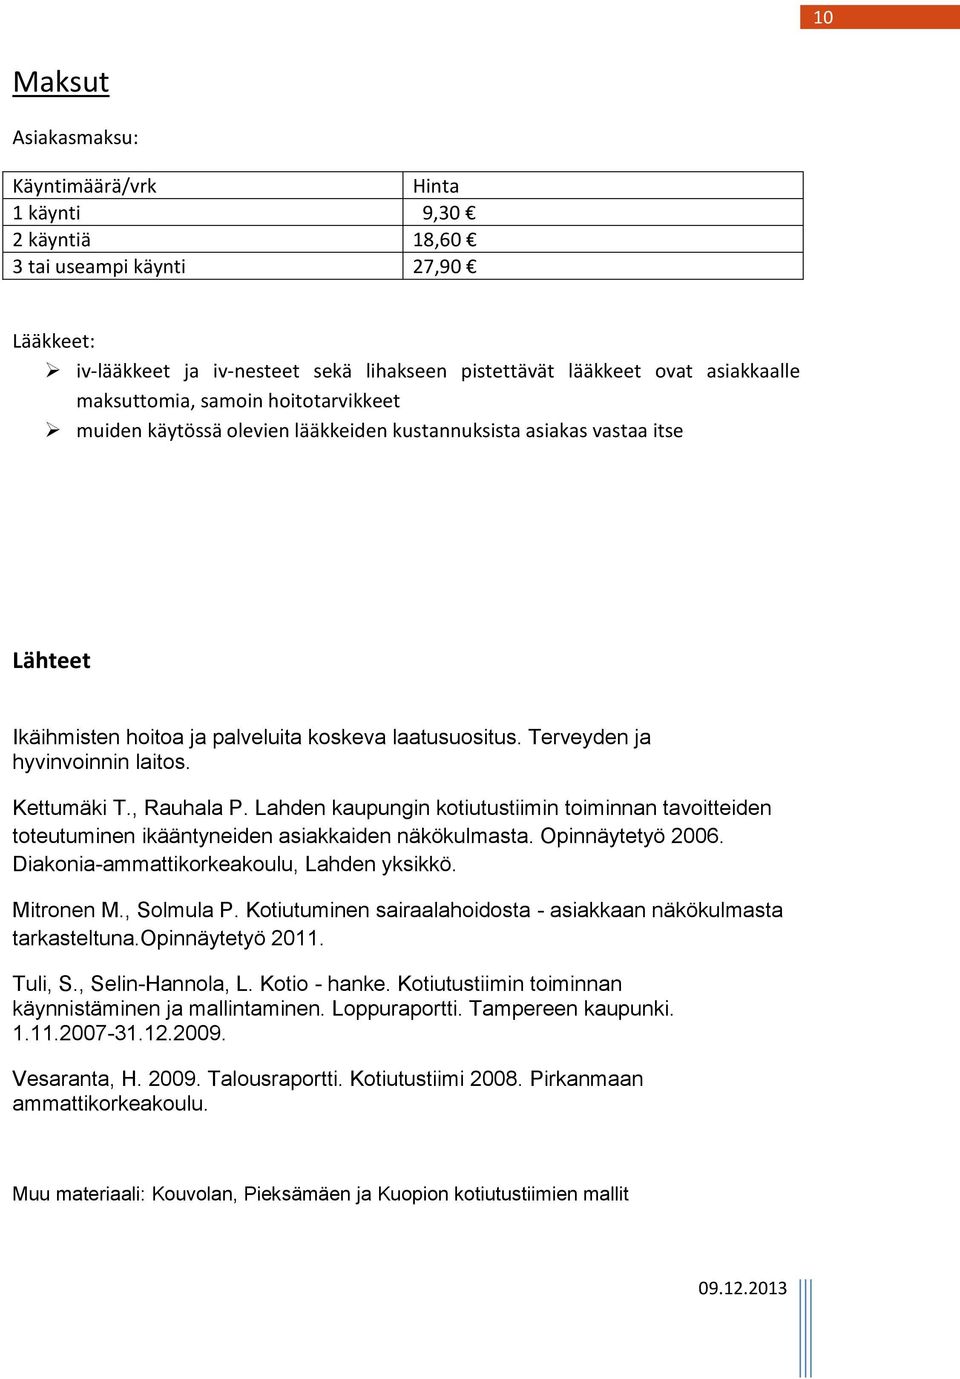 Terveyden ja hyvinvoinnin laitos. Kettumäki T., Rauhala P. Lahden kaupungin kotiutustiimin toiminnan tavoitteiden toteutuminen ikääntyneiden asiakkaiden näkökulmasta. Opinnäytetyö 2006.